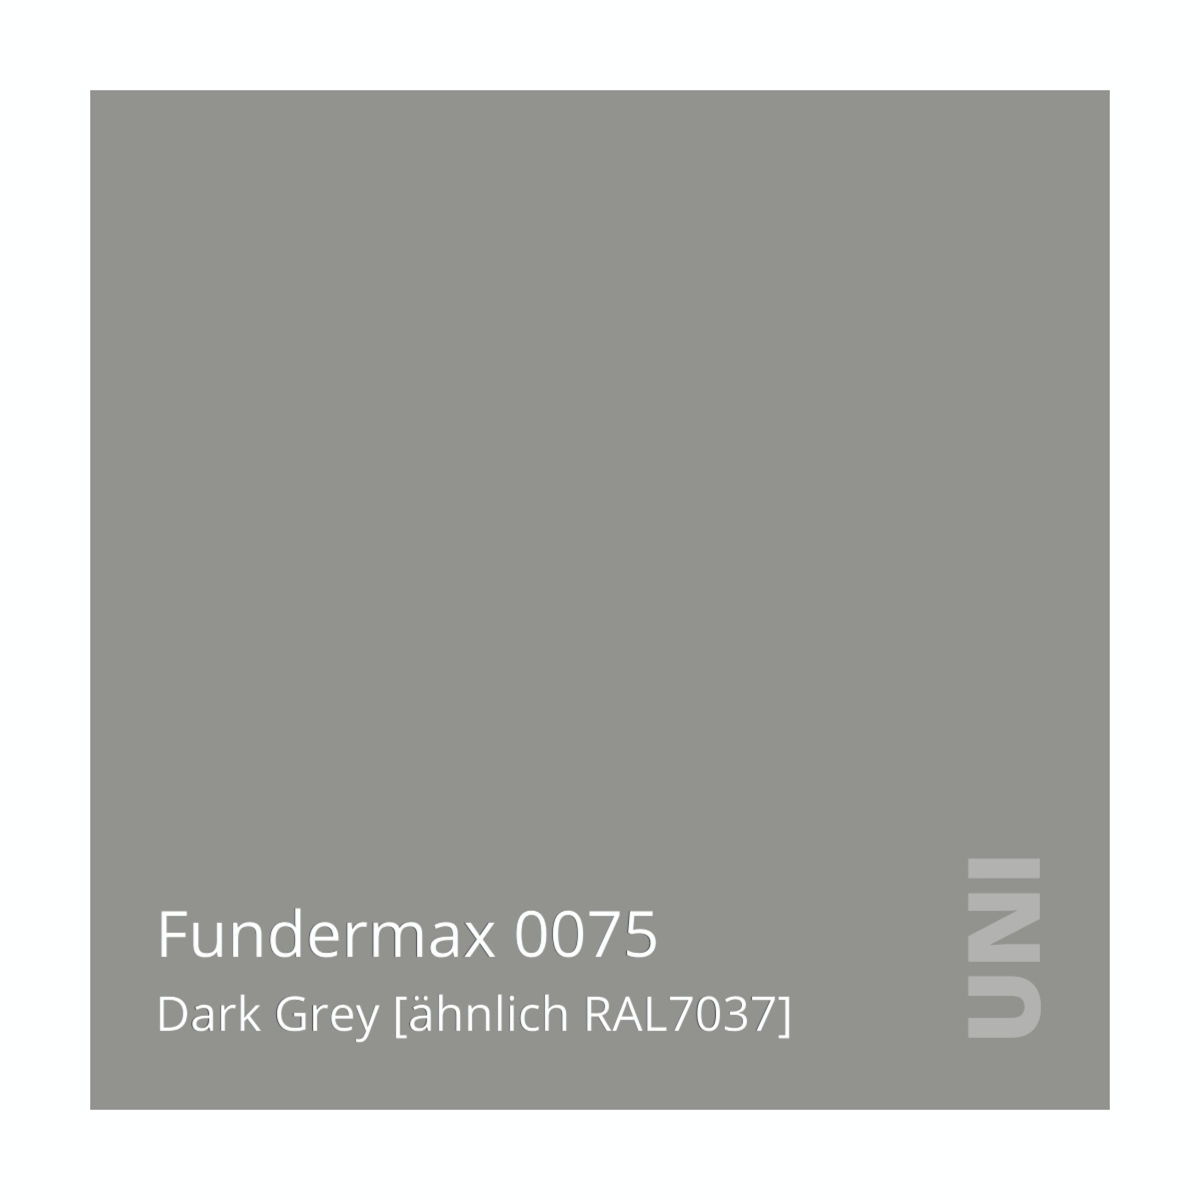 Fundermax 0075 Dark Grey [ähnlich RAL7037]